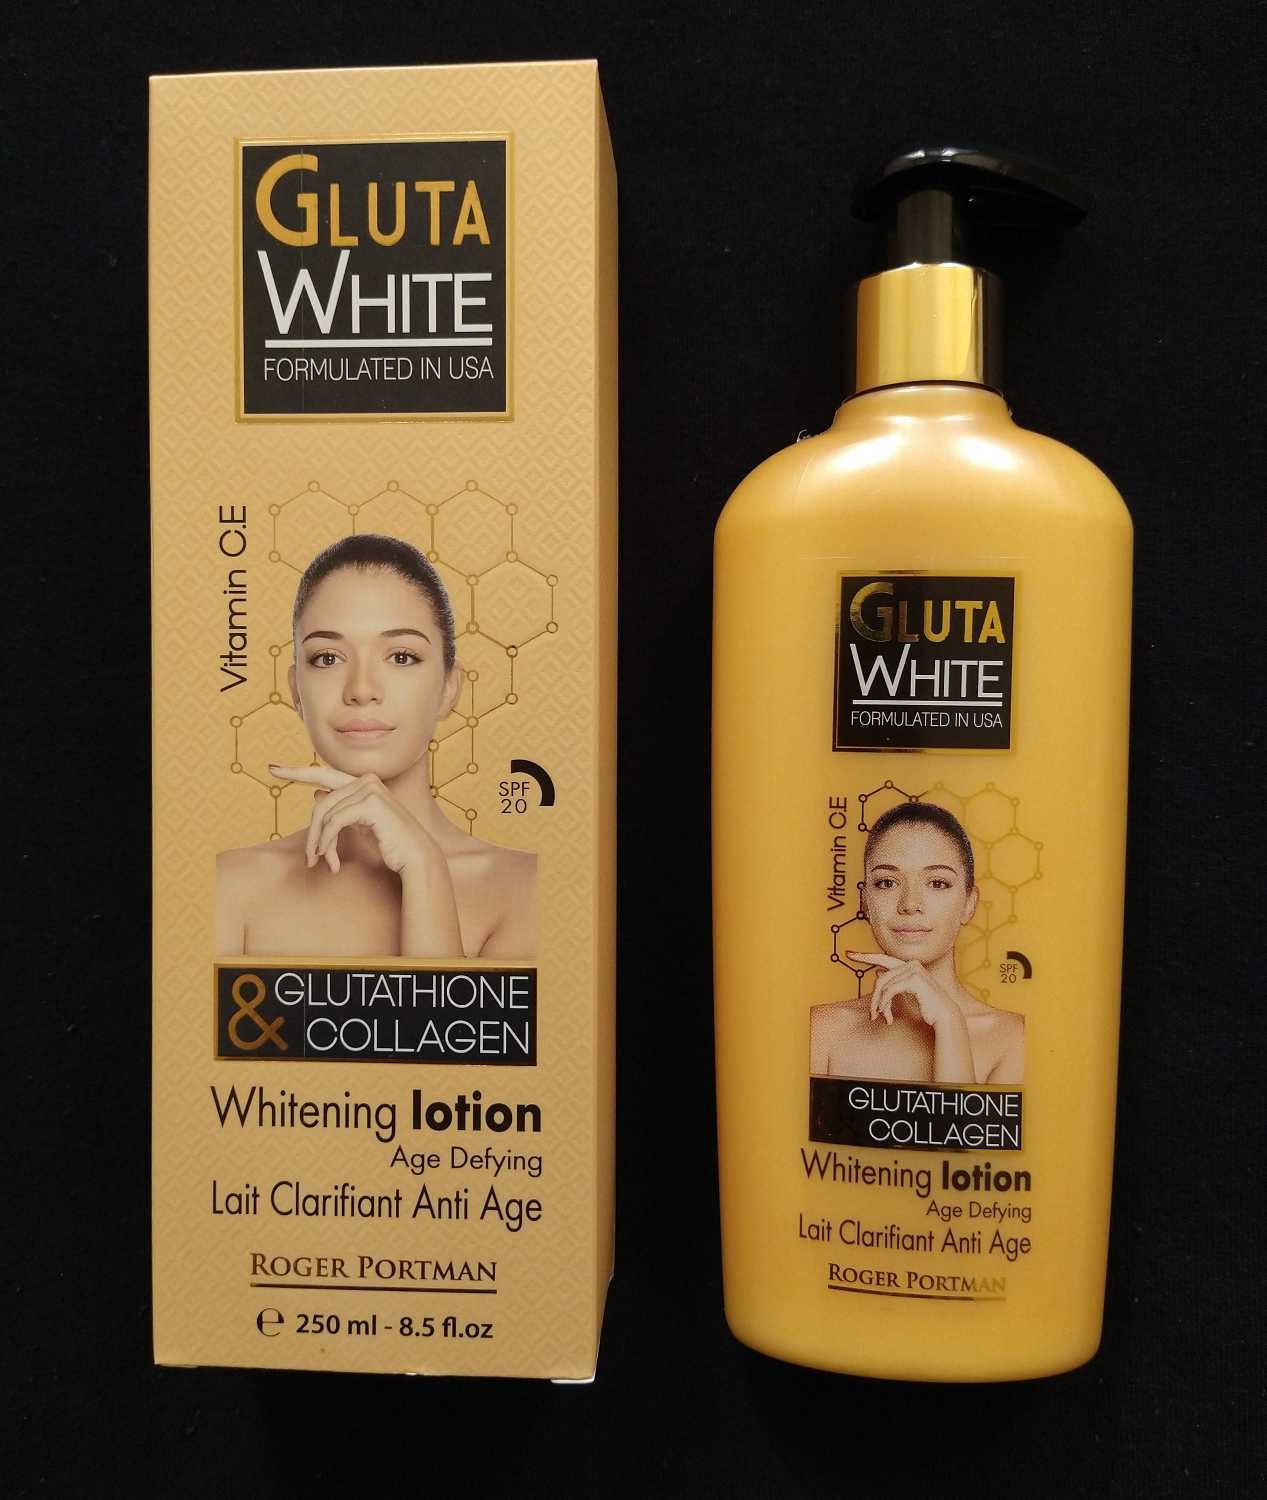 Gluta White Glutathione and Collagen Whitening Lotion